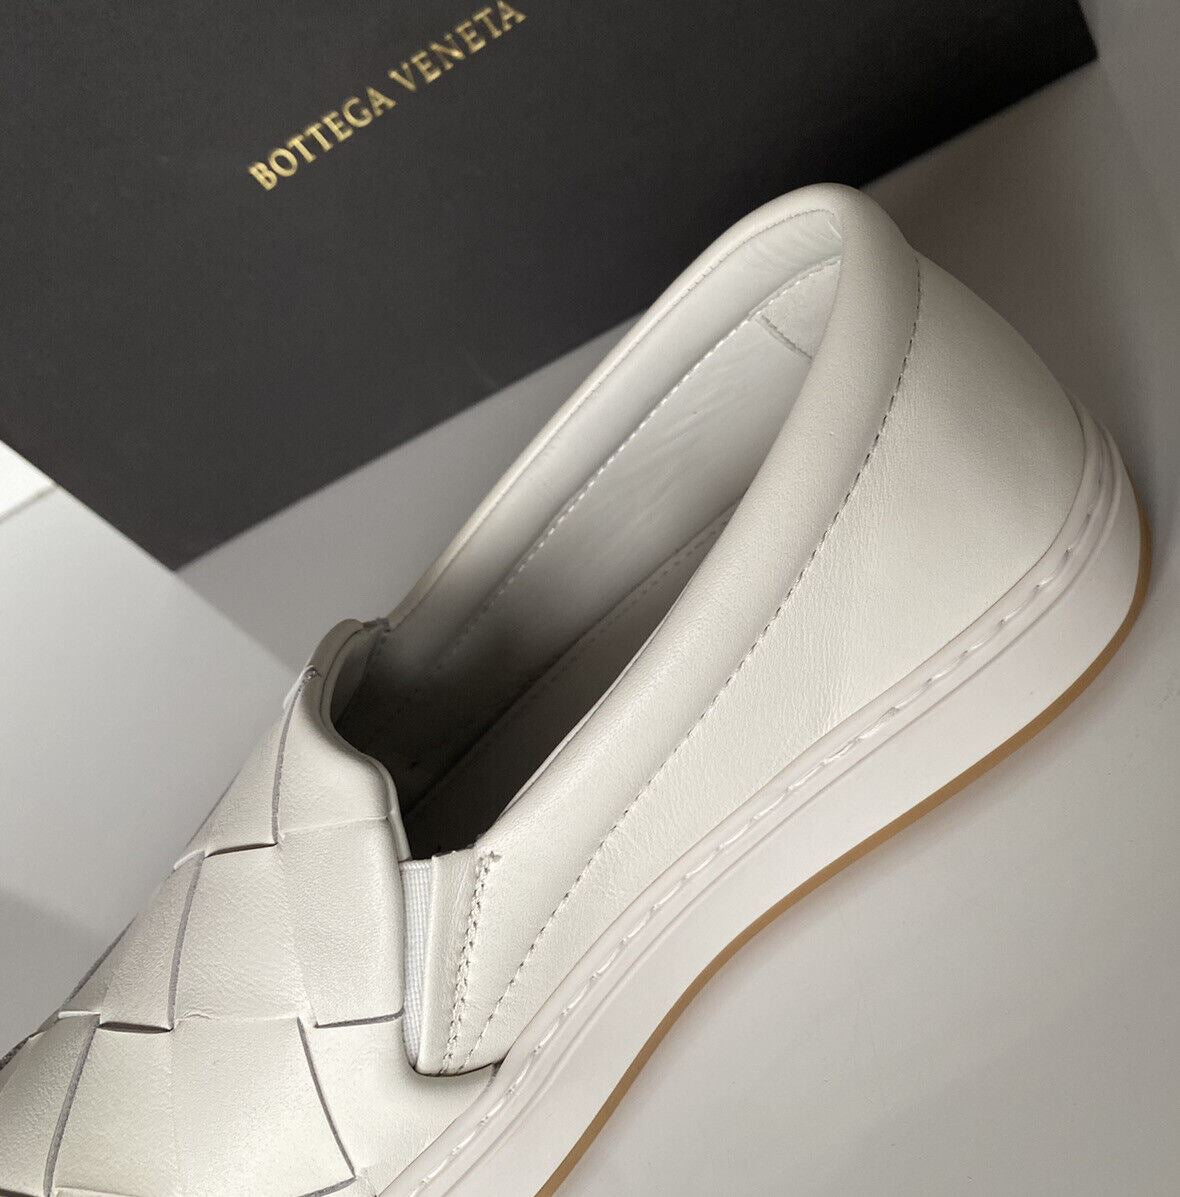 NIB Bottega Veneta Rubber Sole Calf Leather Optic White Shoes 10 US 578303 9122